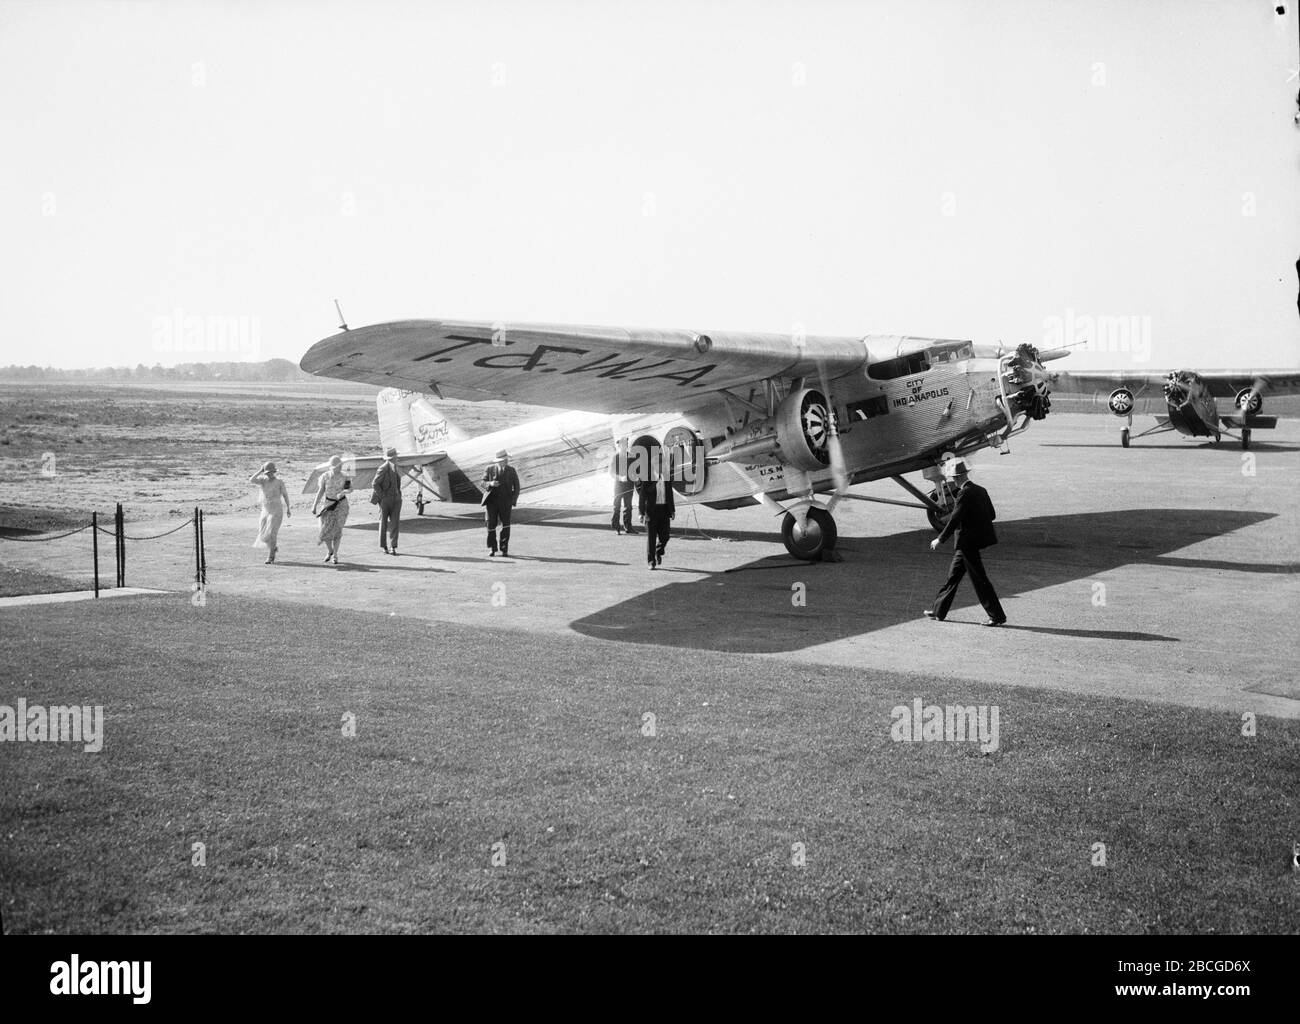 Passagiere gehen auf dem Asphalt, nachdem sie ein Flugzeug der City of Indianapolis T&WA Air Mail, 1934, deplaniert haben. Fotografie von Burton Holmes. Stockfoto